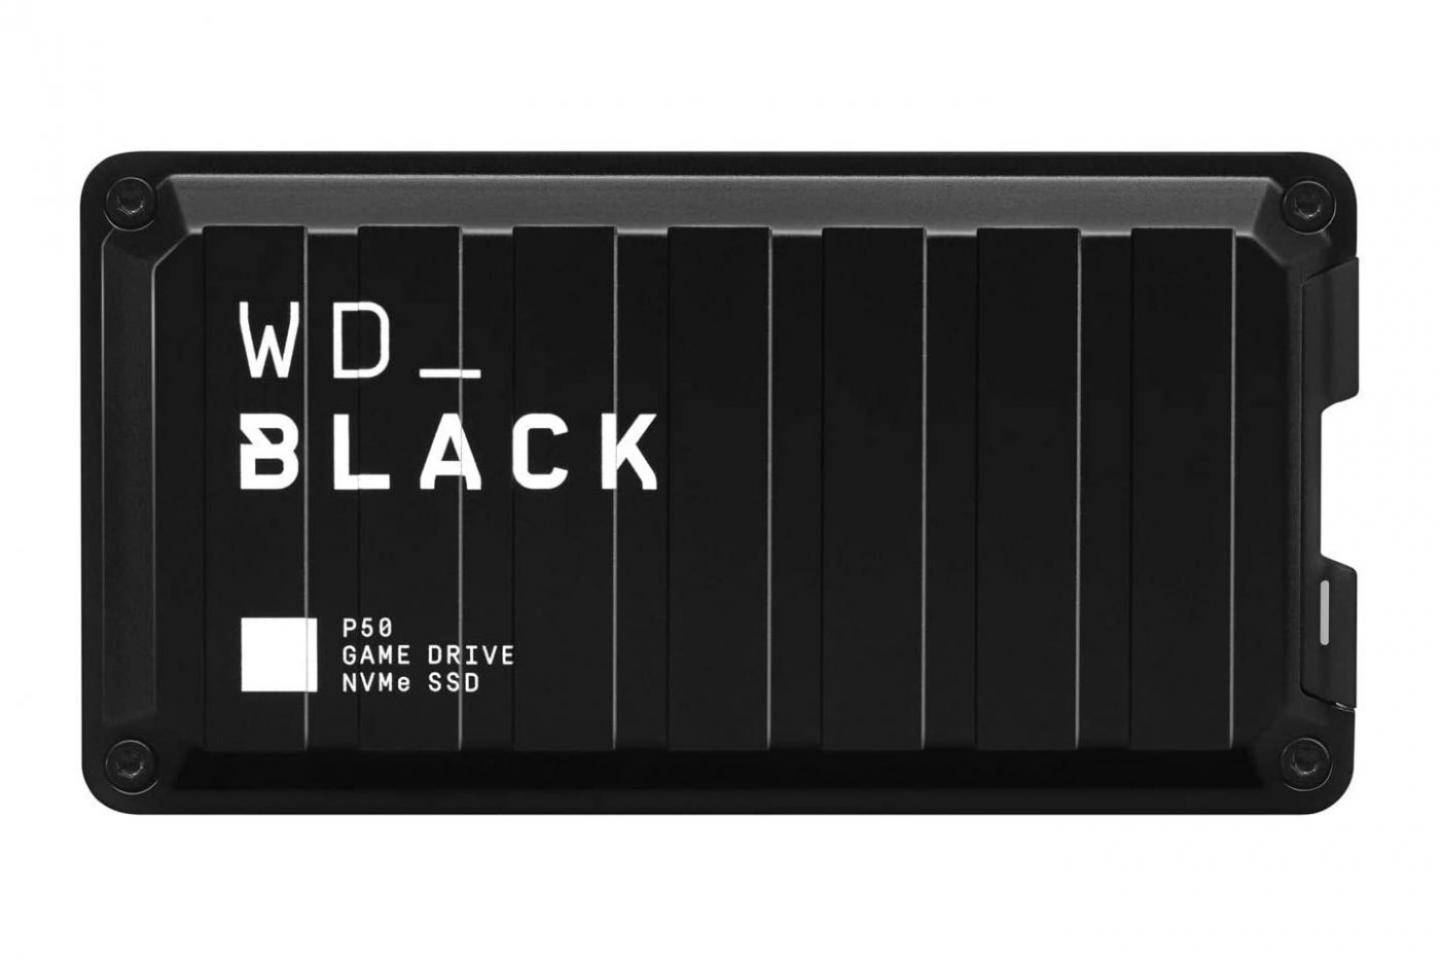 2.0TB SSD(WD BLACK P50)